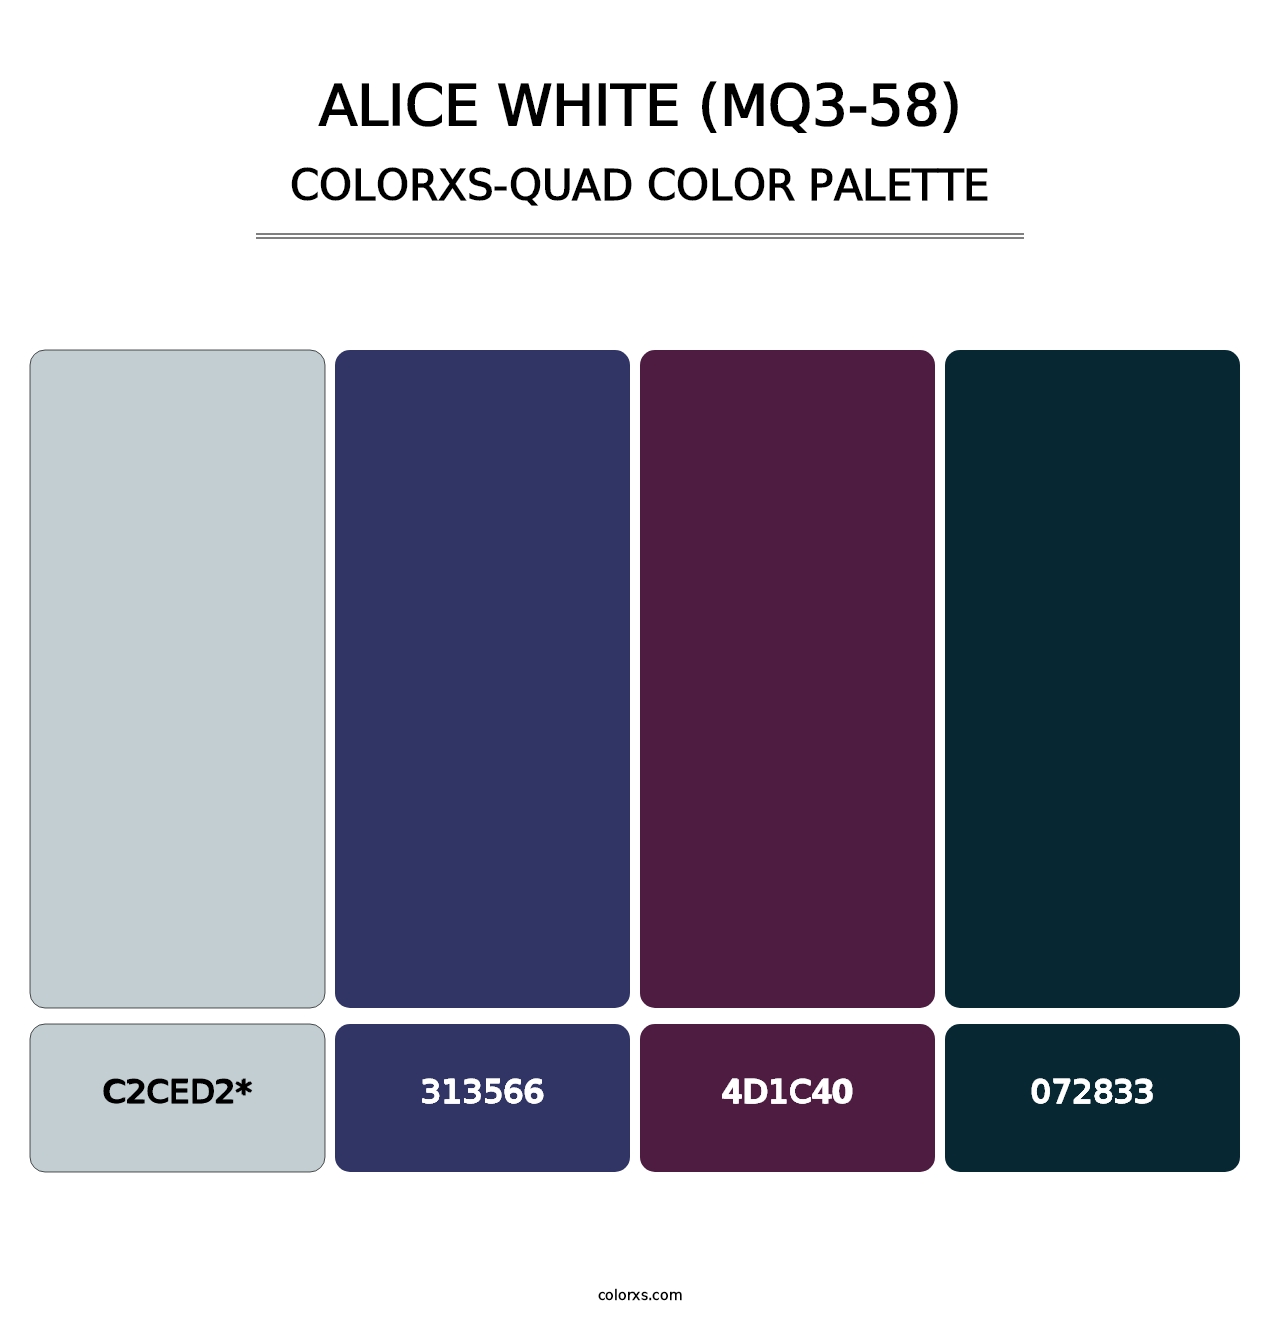 Alice White (MQ3-58) - Colorxs Quad Palette